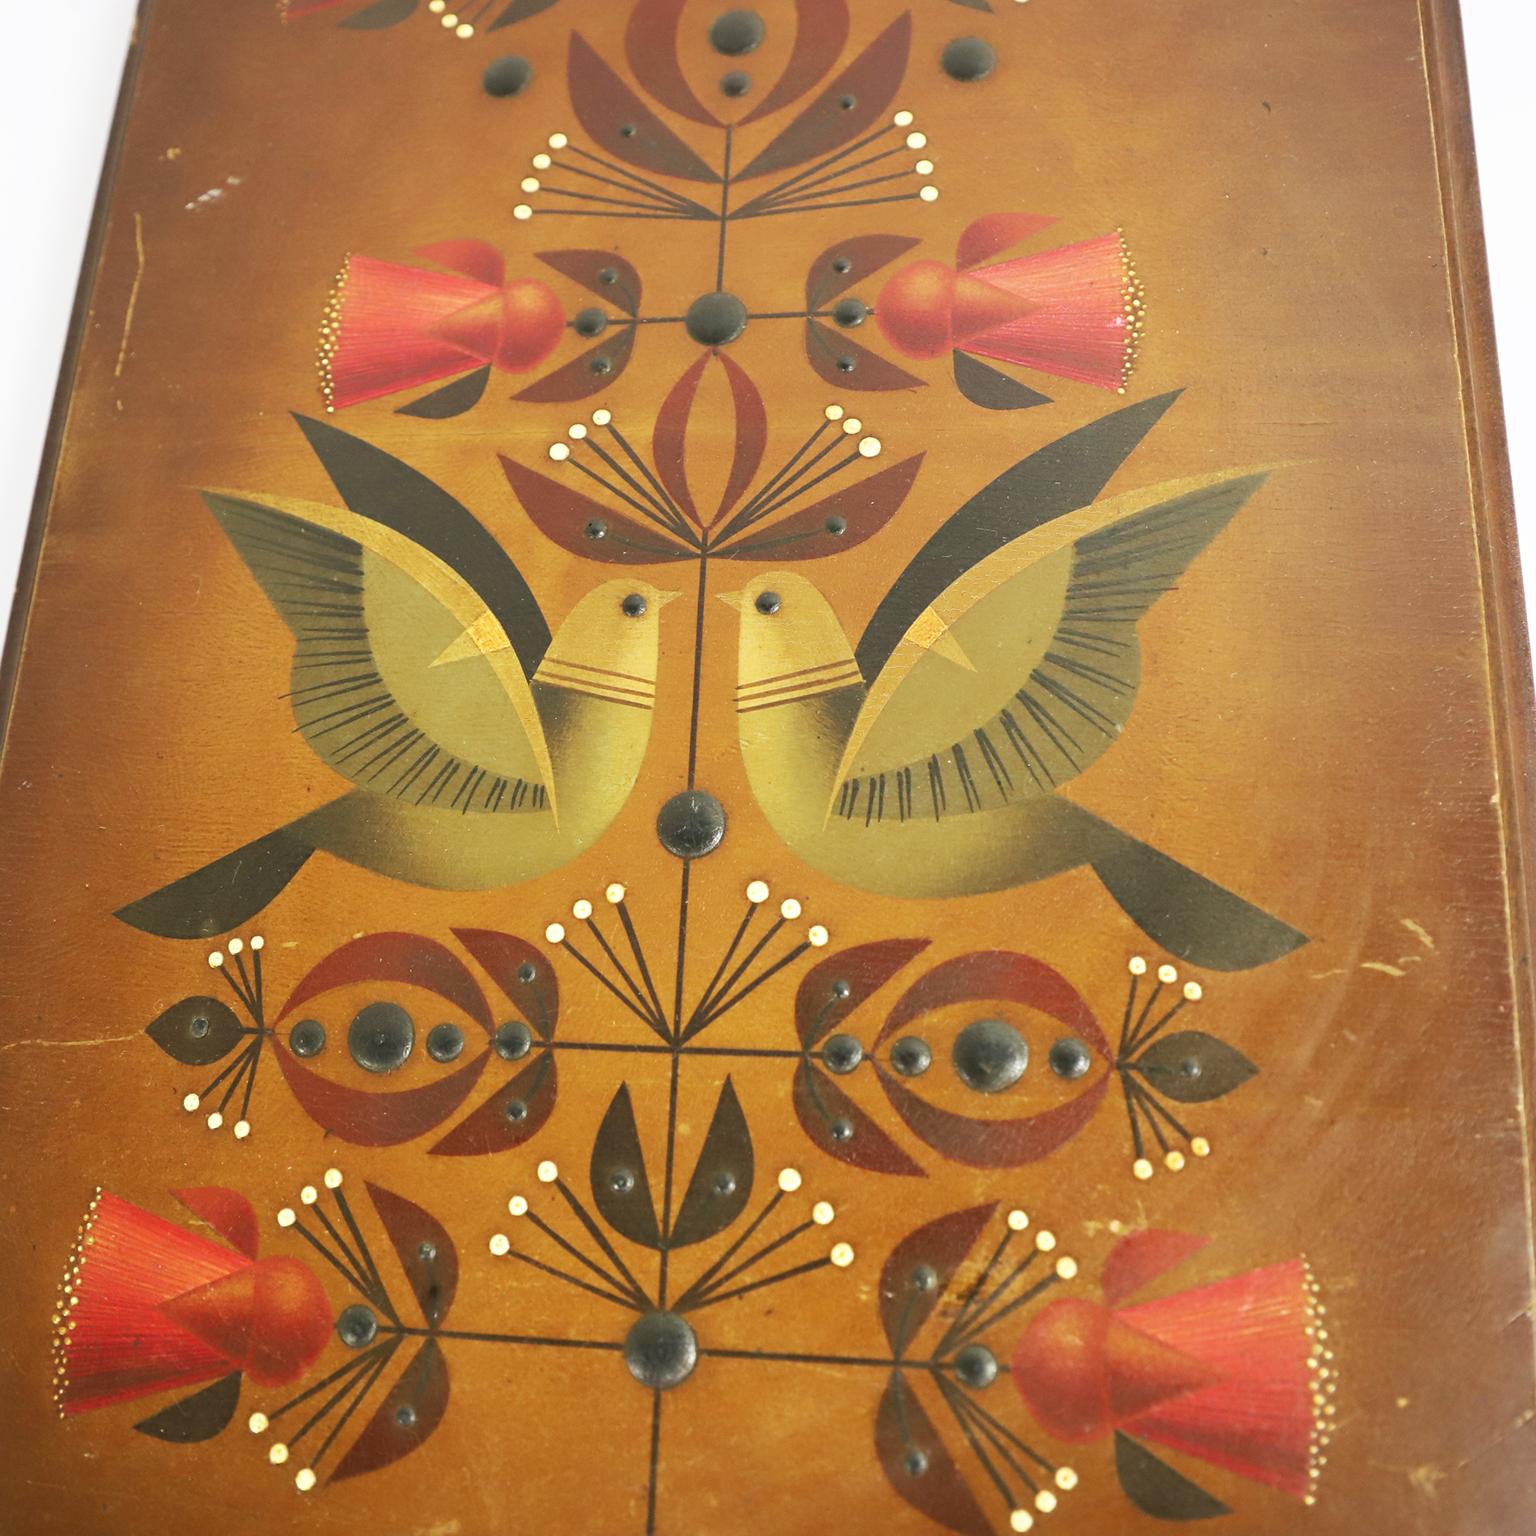 CIRCA 1960, Wir bieten diese fantastische dekorative Rahmen Hand von Alejandro Rangel Hidalgo gemalt.

Alejandro Rangel Hidalgo (1923-2000) war ein mexikanischer Künstler, Grafikdesigner und Kunsthandwerker, der in den 1960er Jahren vor allem durch